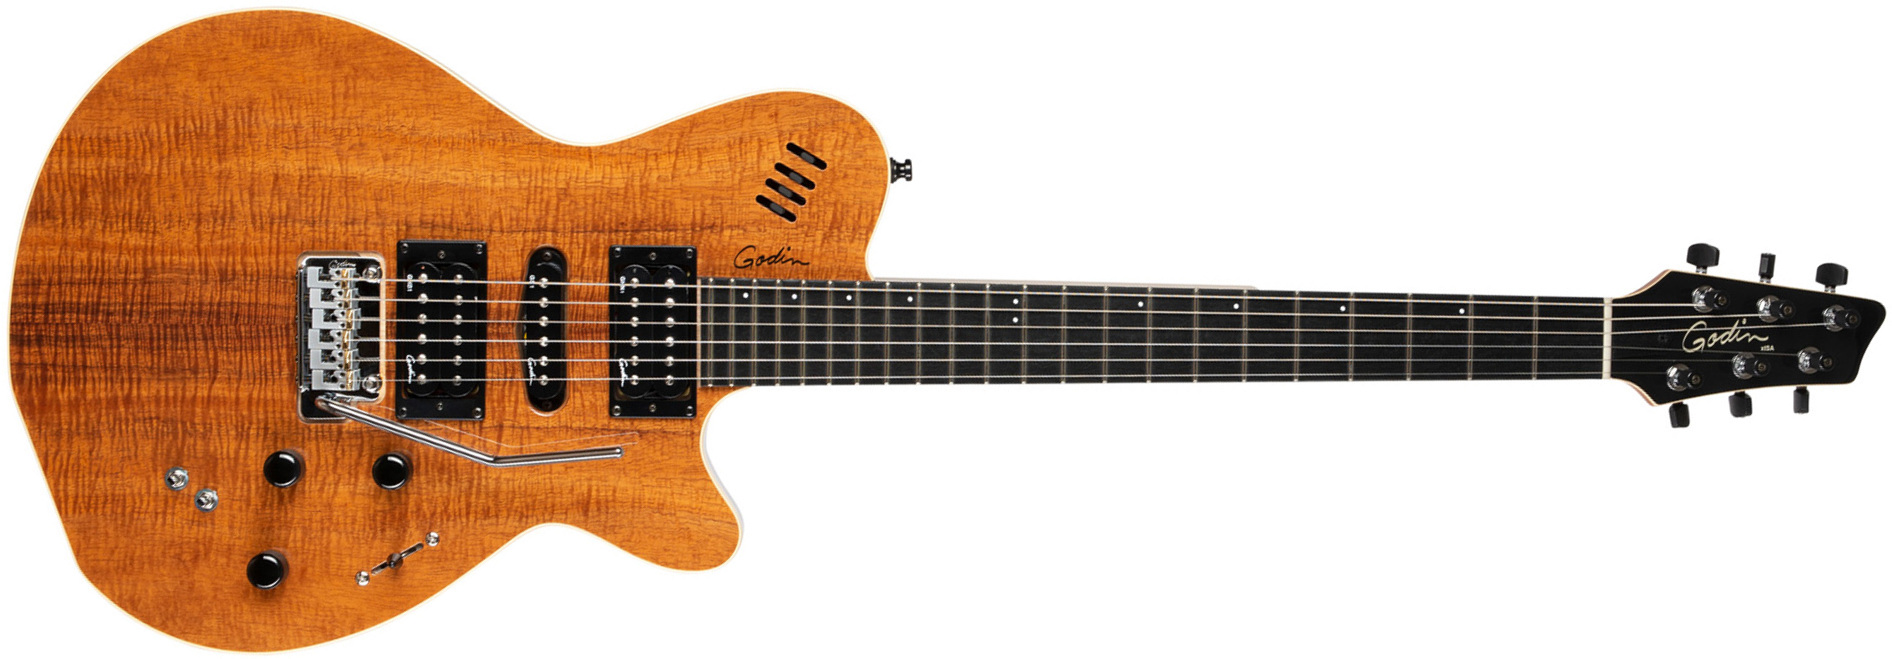 Godin Xtsa Koa Extreme Hsh Piezo Midi Trem Ric - Natural Hg - Modeling guitar - Main picture